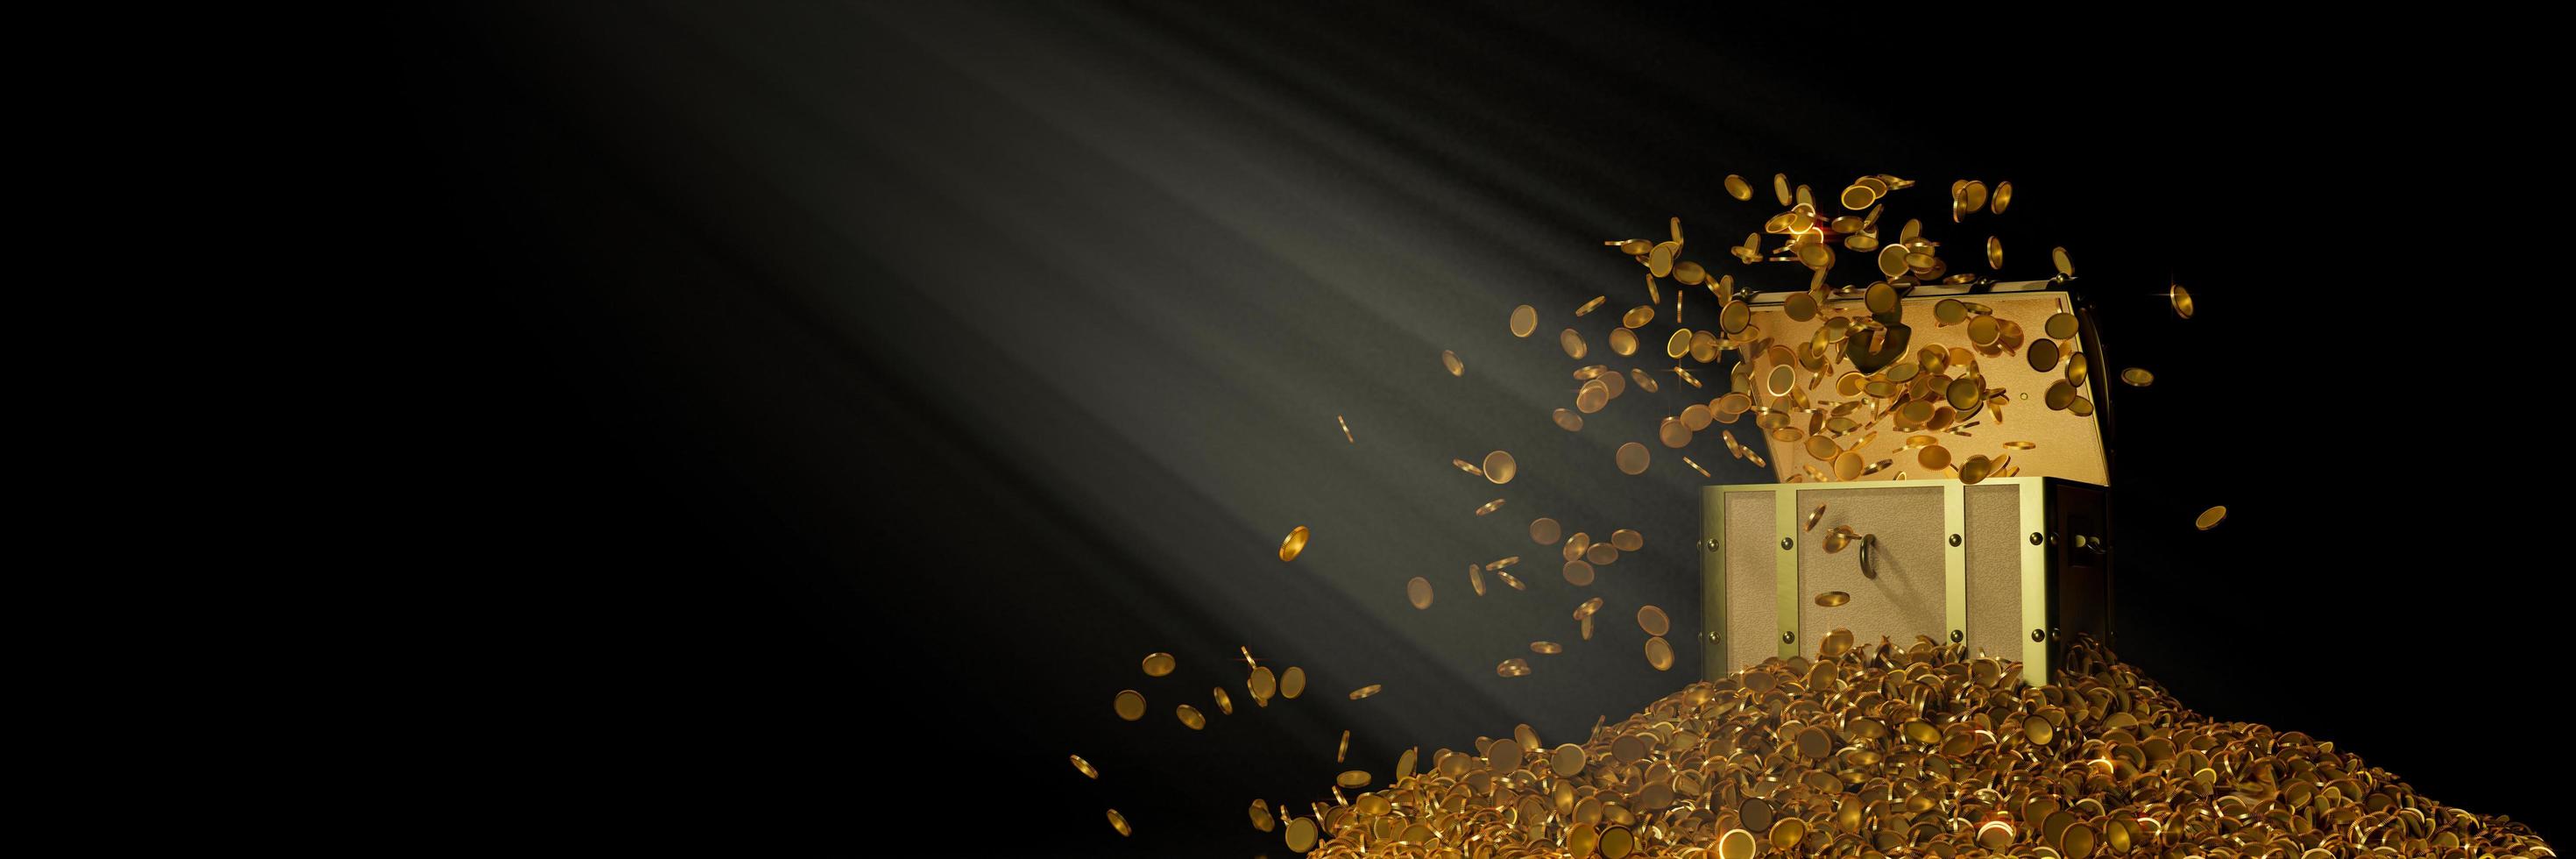 talloze gouden munten stroomden uit de schatkist. oude houten schatkist strak in elkaar gezet met verroeste metalen strips. 3D-rendering foto